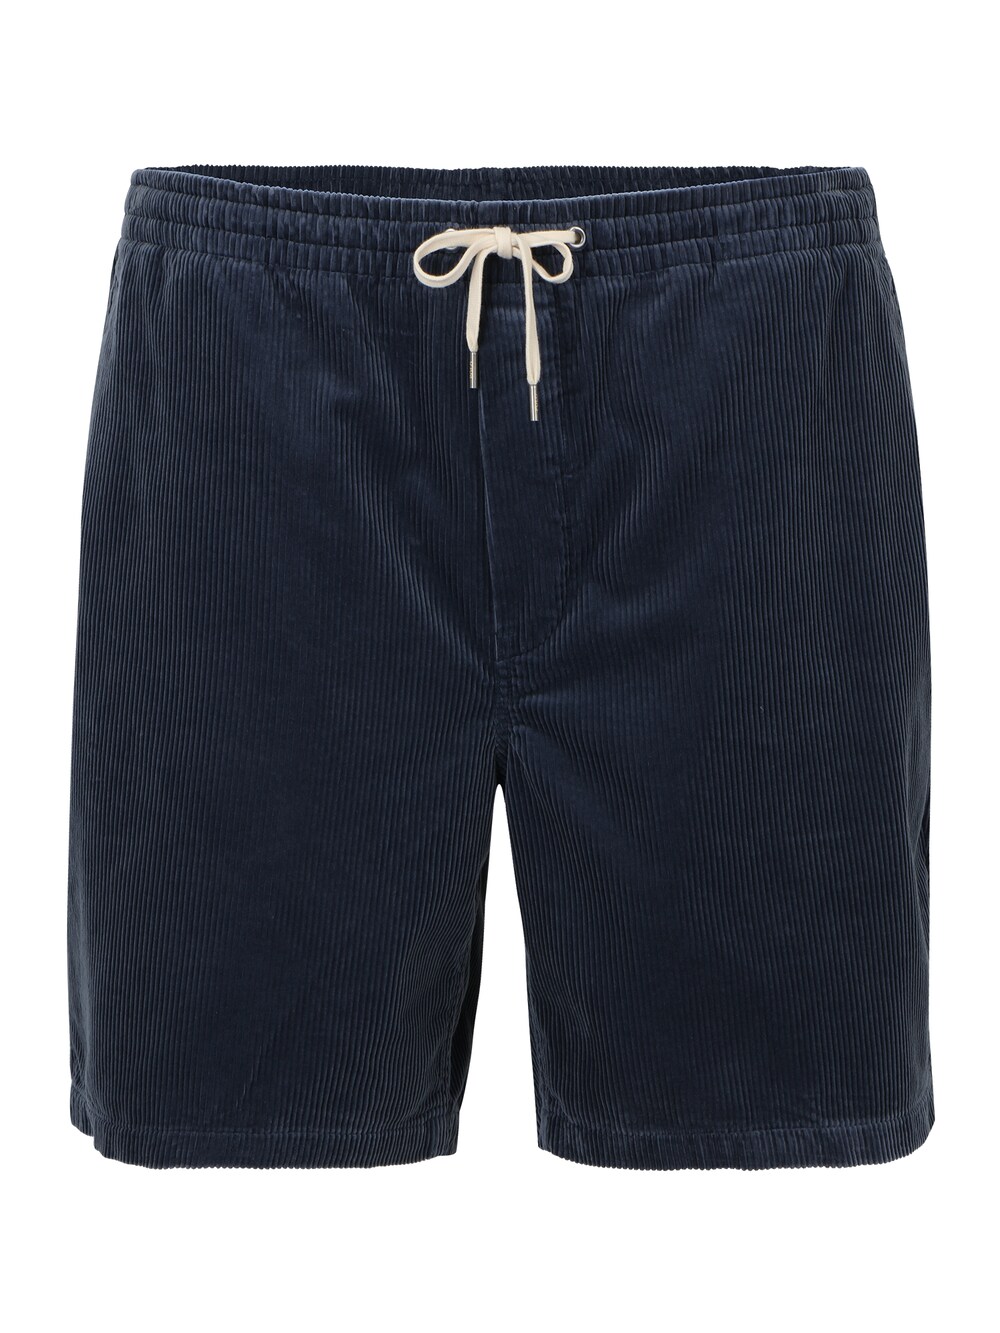 Обычные брюки Polo Ralph Lauren Big & Tall, темно-синий кроссовки hanford polo ralph lauren темно синий